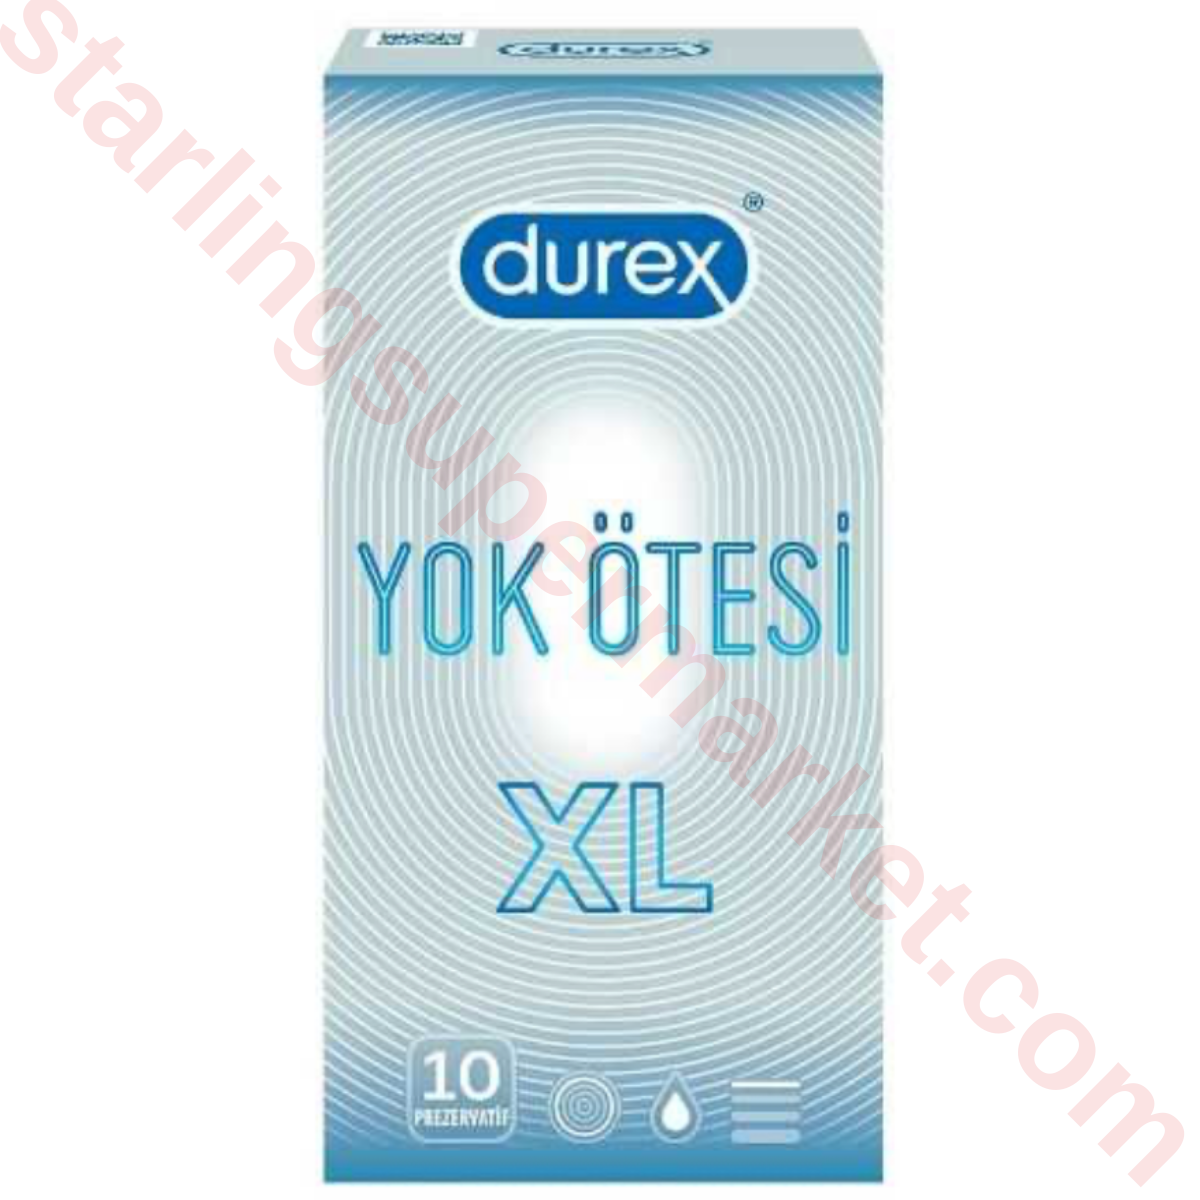 DUREX PREZERVATIF YOK OTESI XL 10 LU